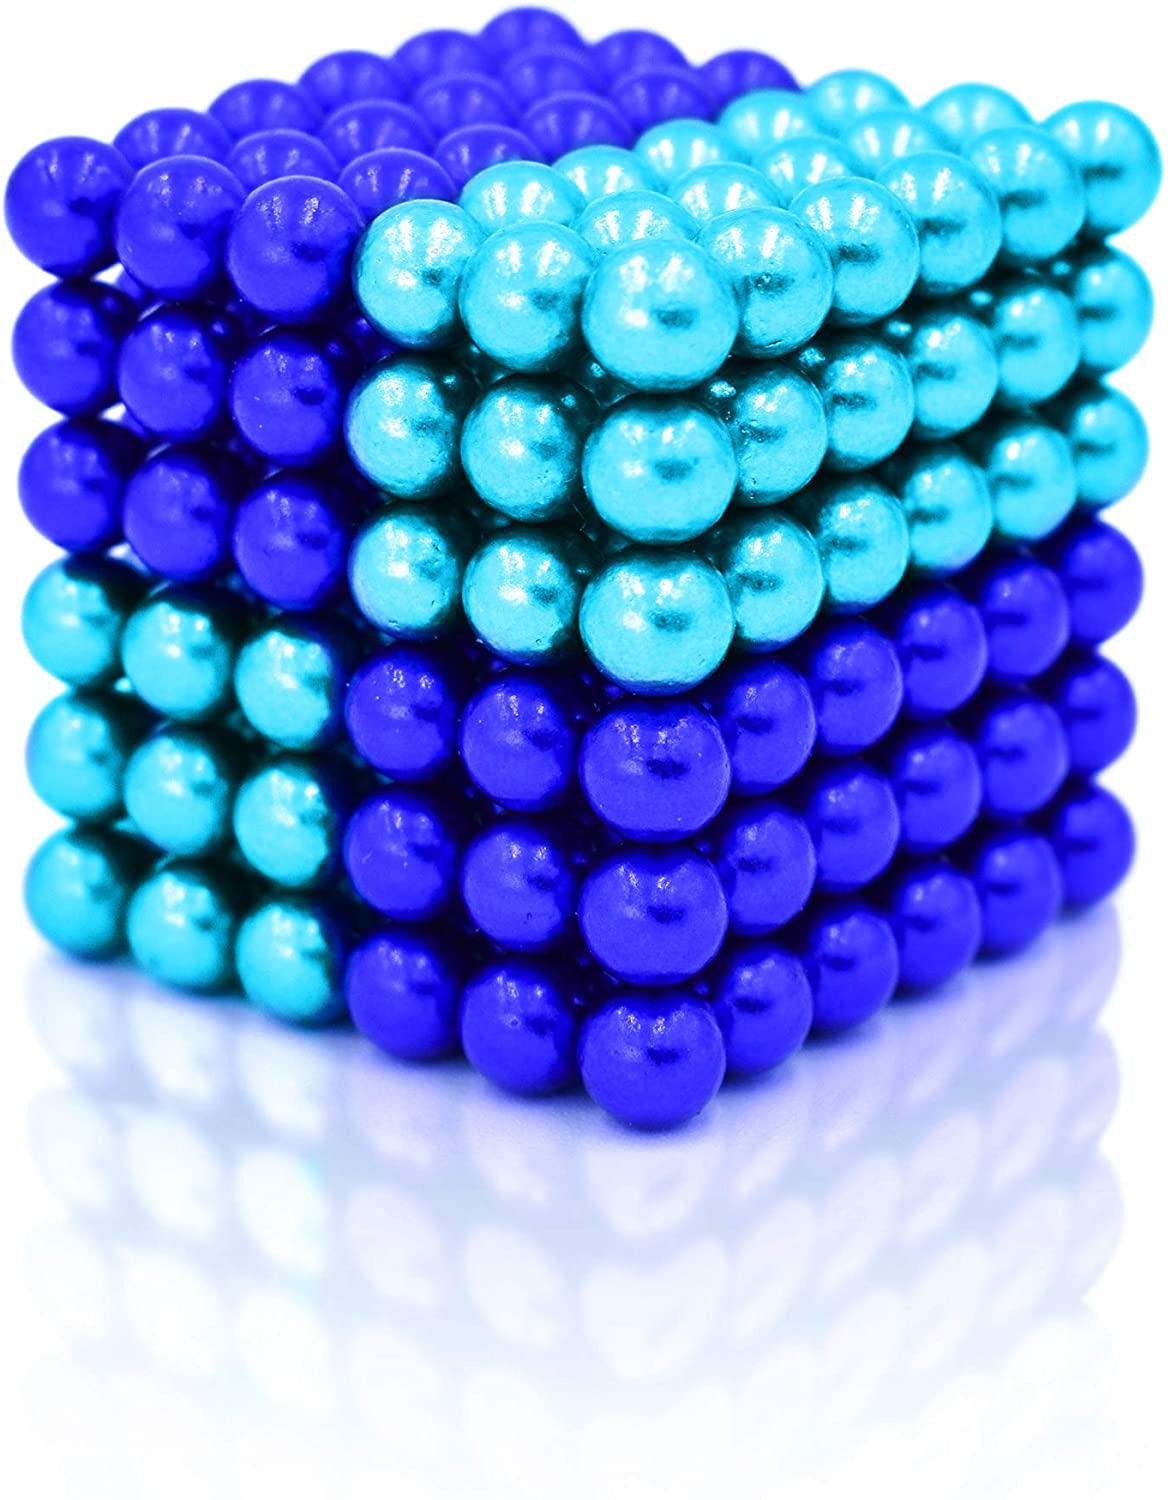 Magnet Balls - Blue/Teal 5 mm